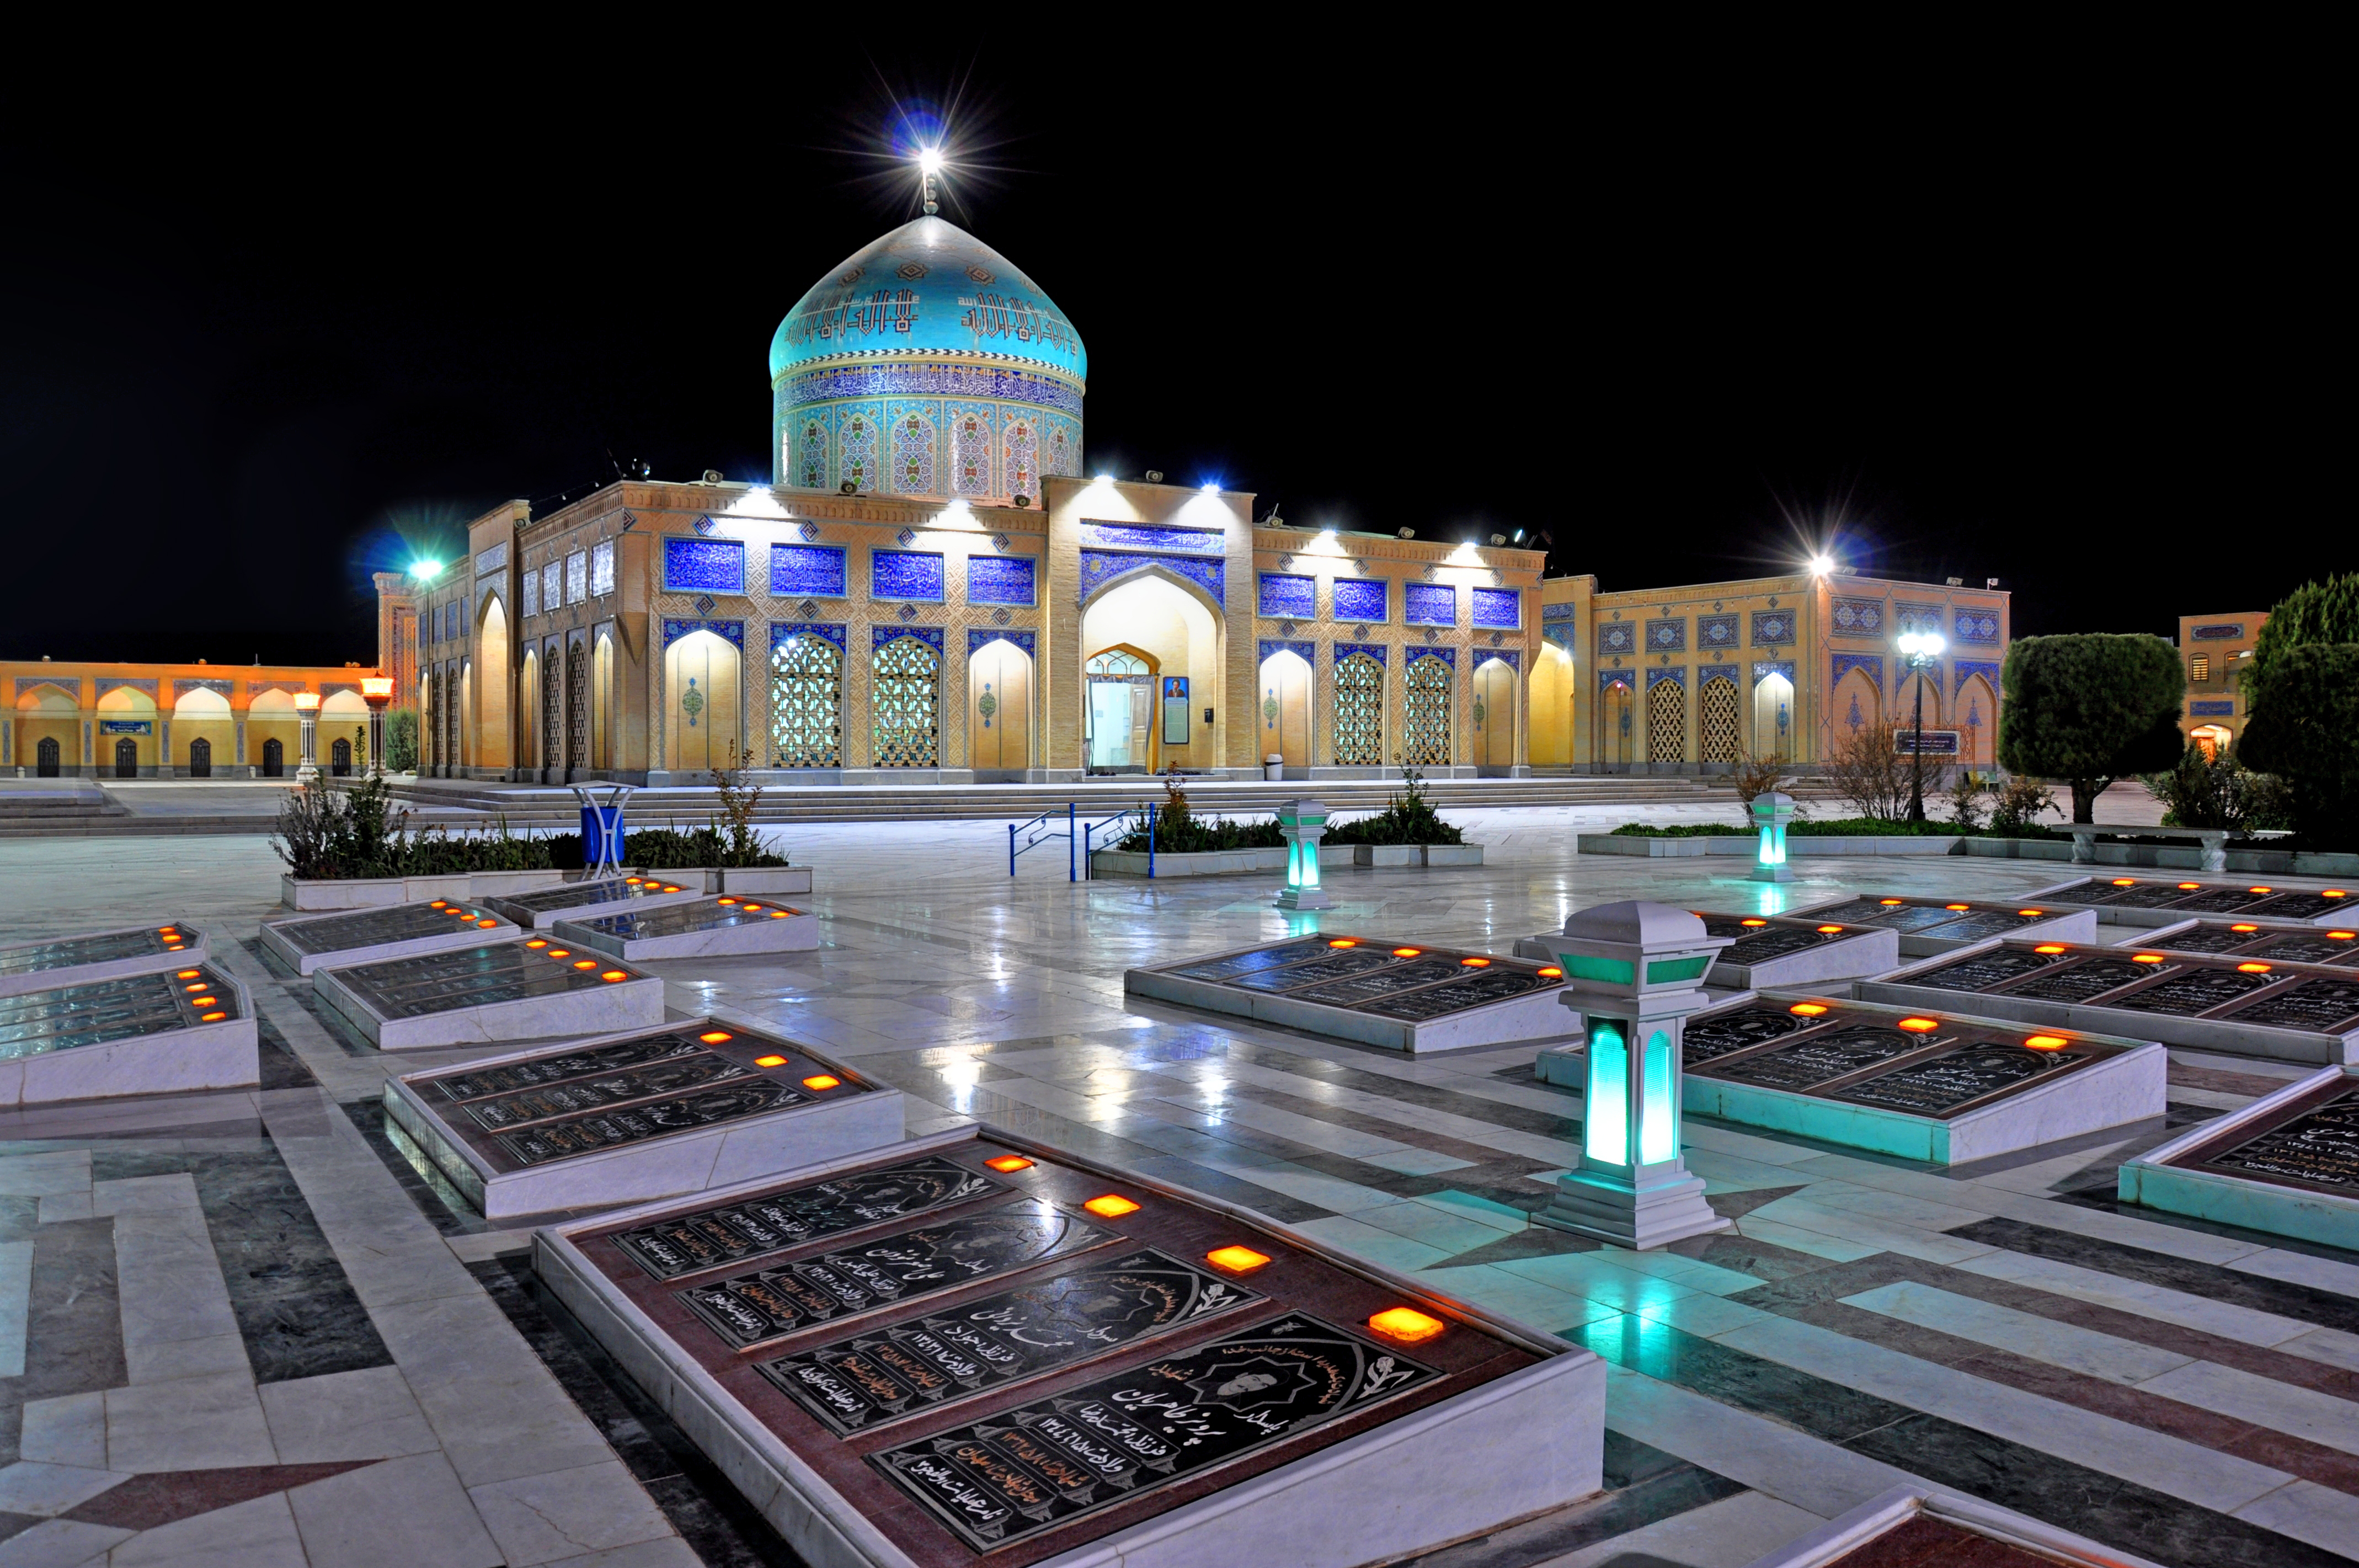 زیارتگاه شهید آیت الله مدرس(ره) کاشمر، مکانی زیبا و با معنویت با امکانات متنوع برای زائران نوروزی